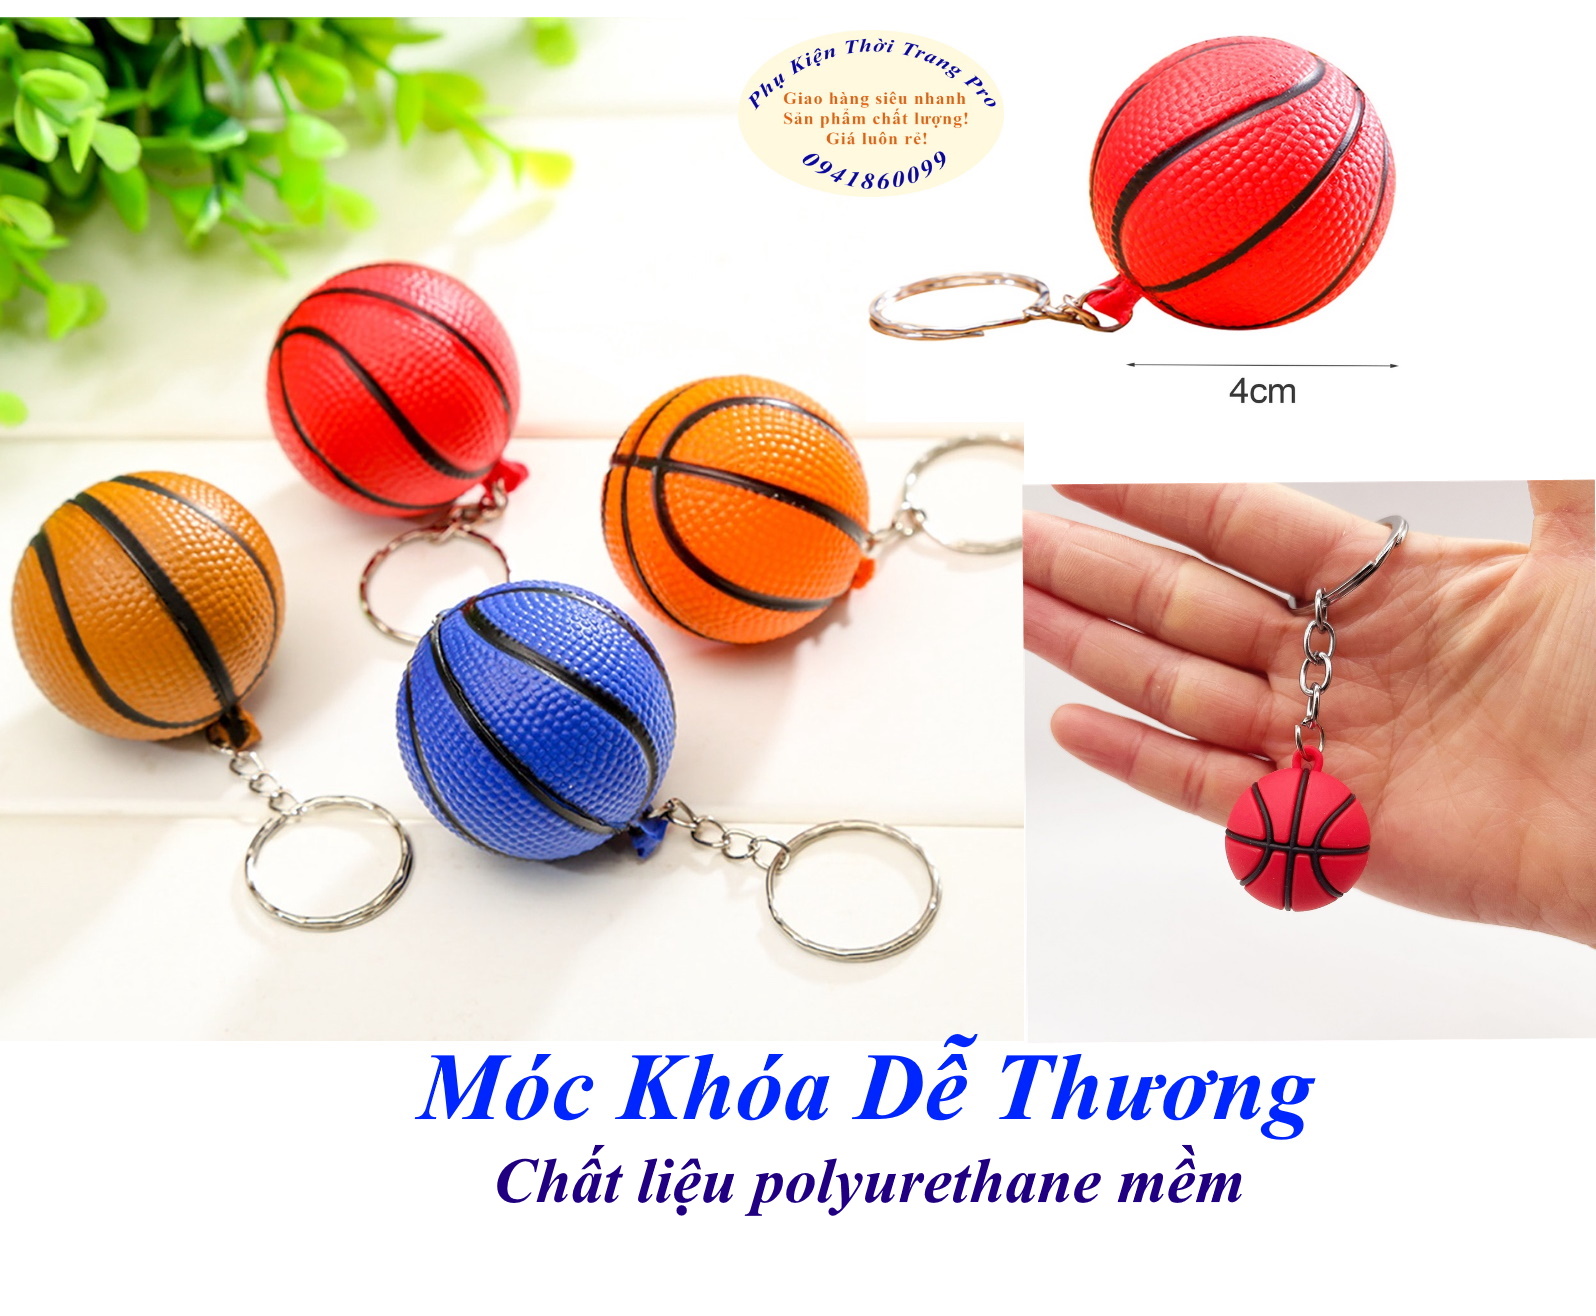 Móc khóa hình trái bóng rổ Size 4cm Chất liệu polyurethane đặc mềm êm, Nhẹ như xốp, Đáng yêu, Xinh xắn, Dễ thương